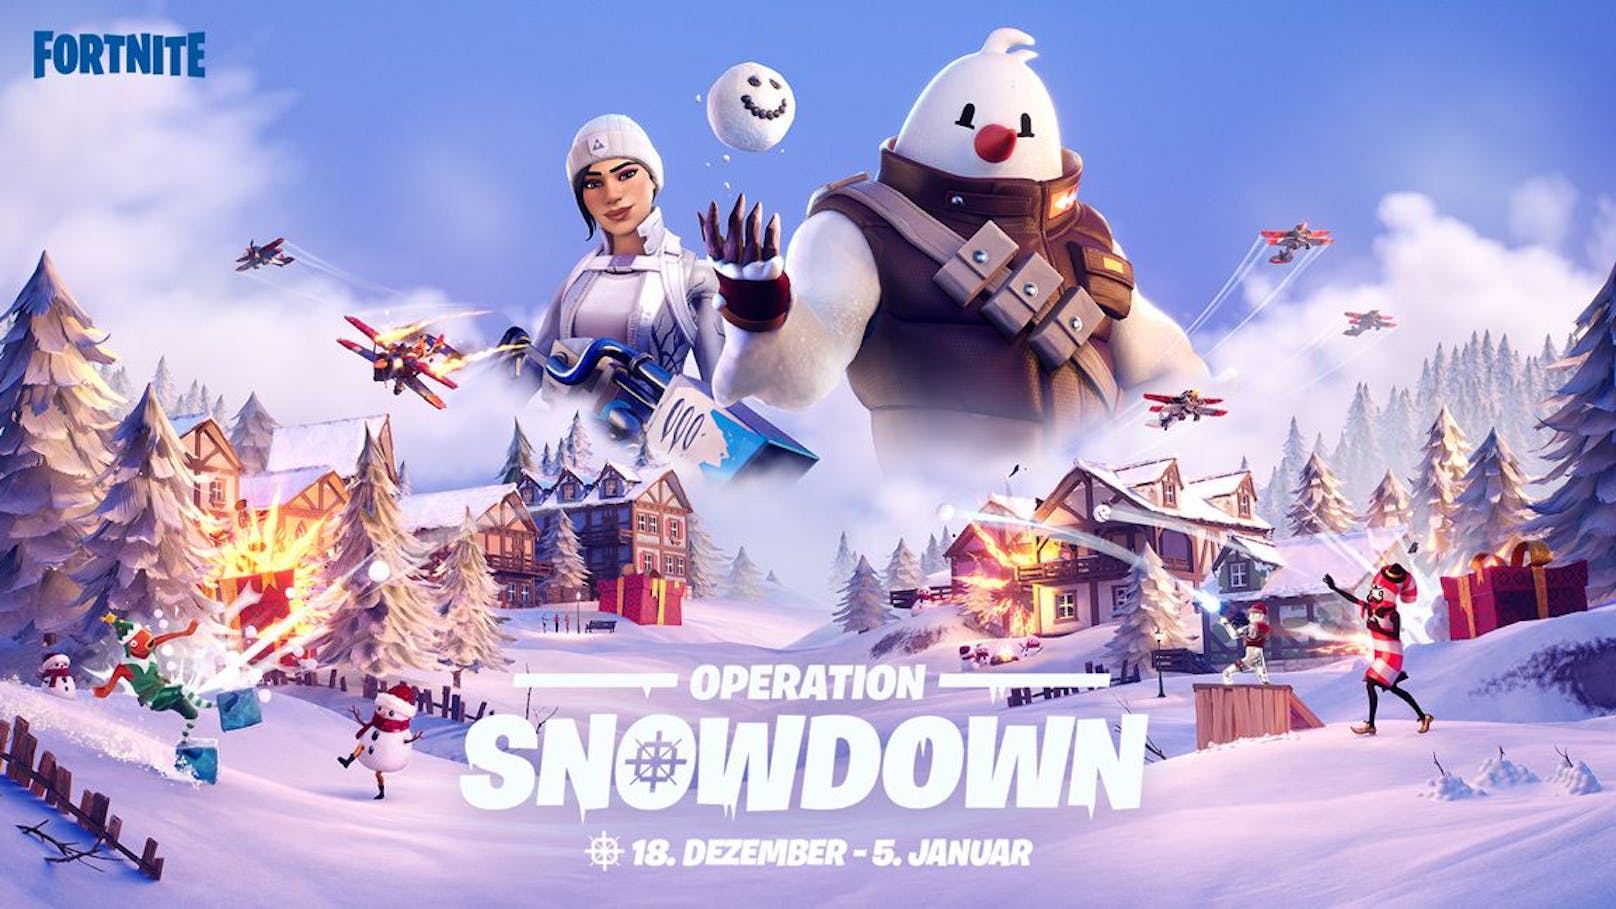 Am 19. Dezember ist die Operation Snowdown gestartet.